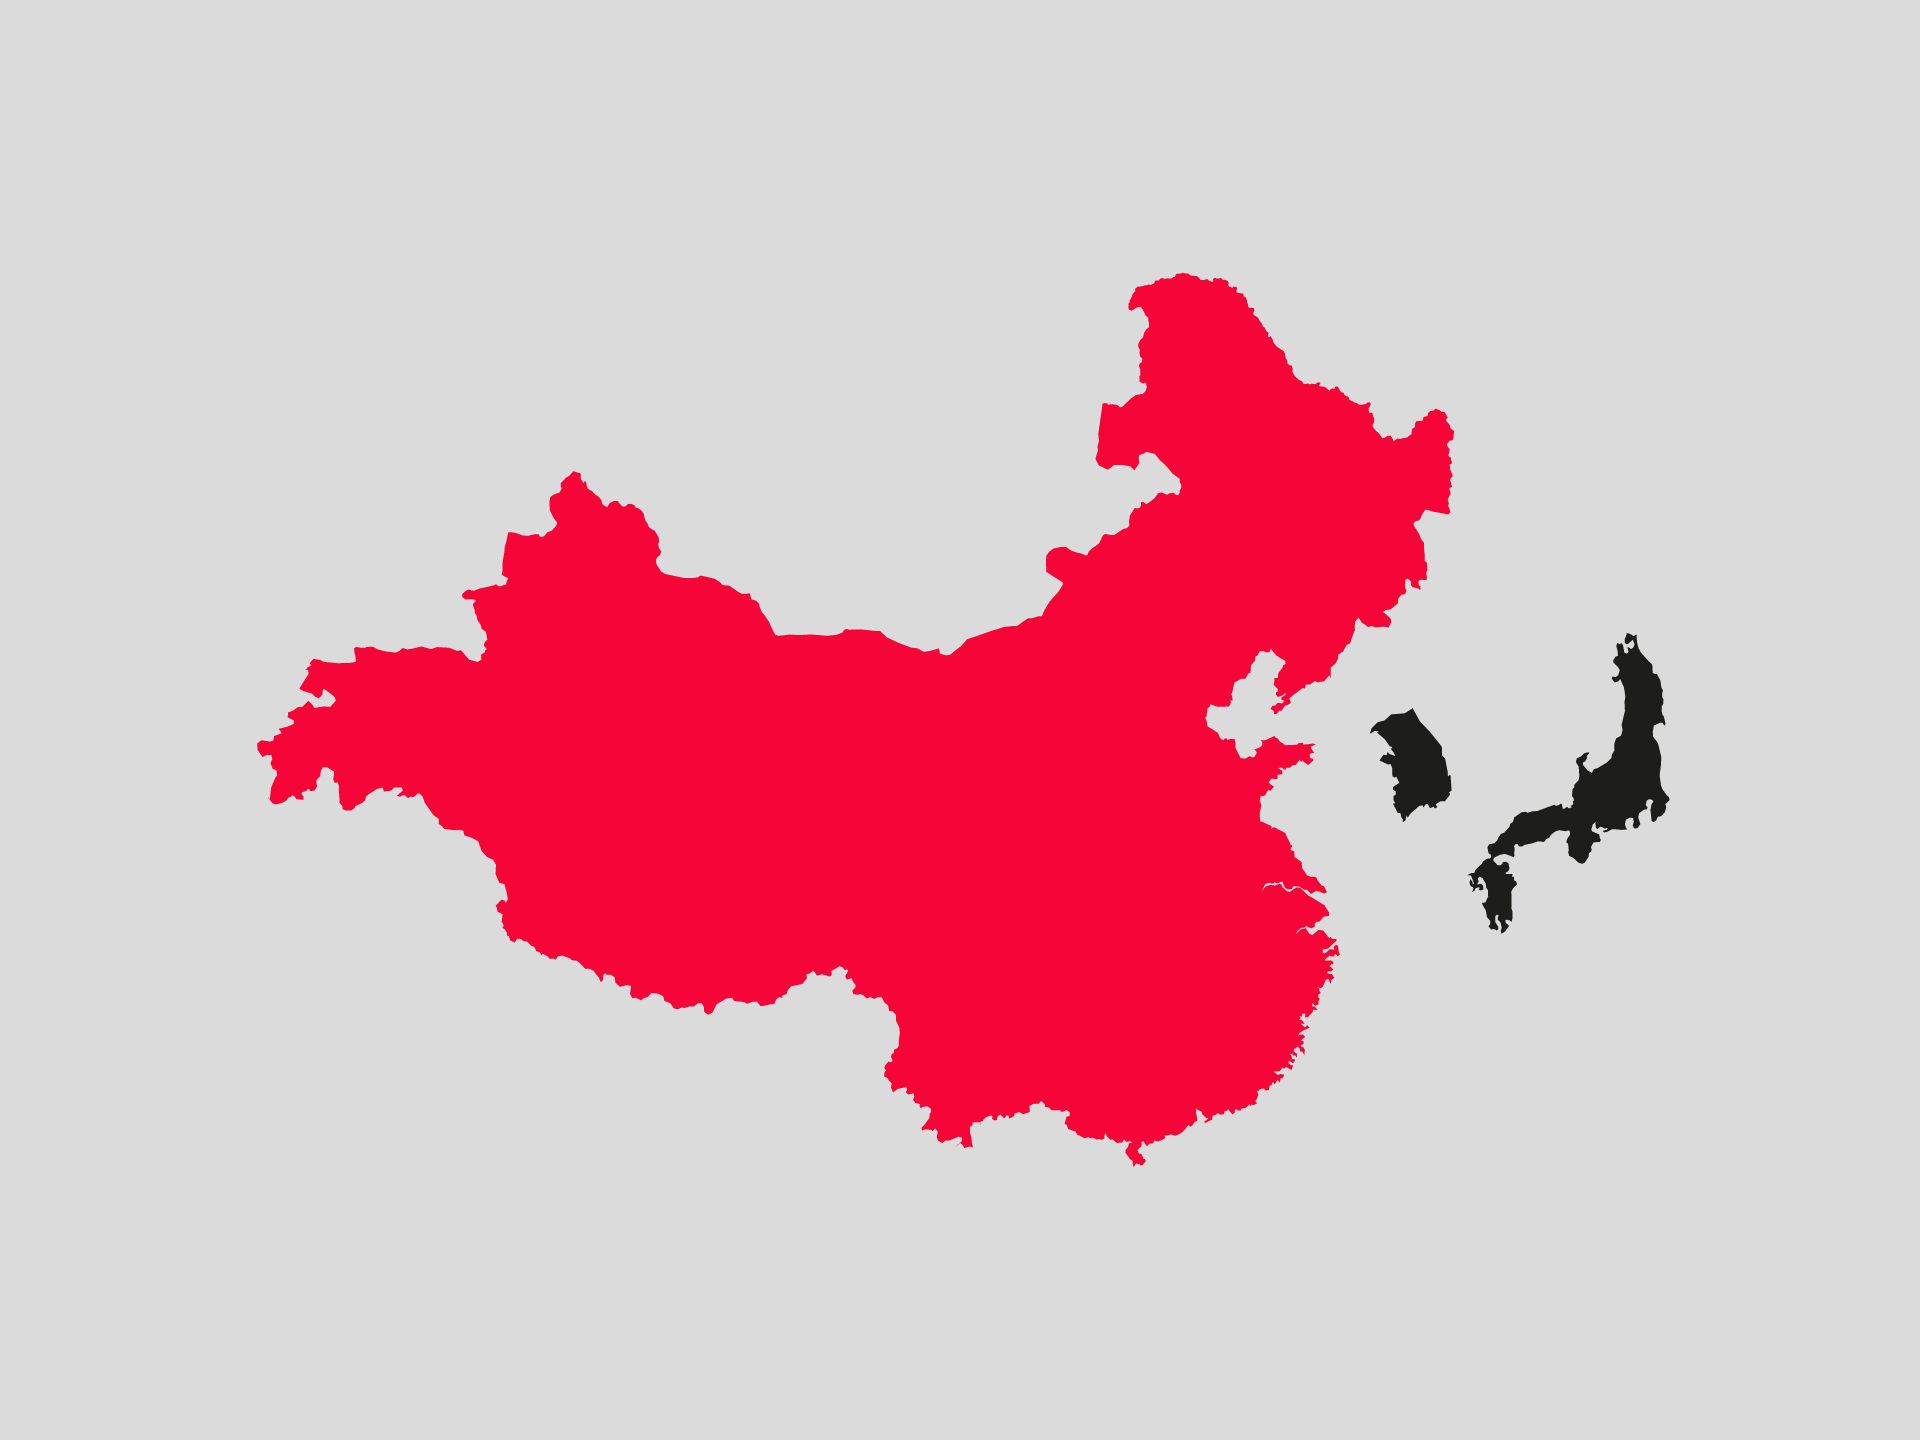 Dieses Bild zeigt China, Südkorea und Japan, China ist farblich hervorgehoben.